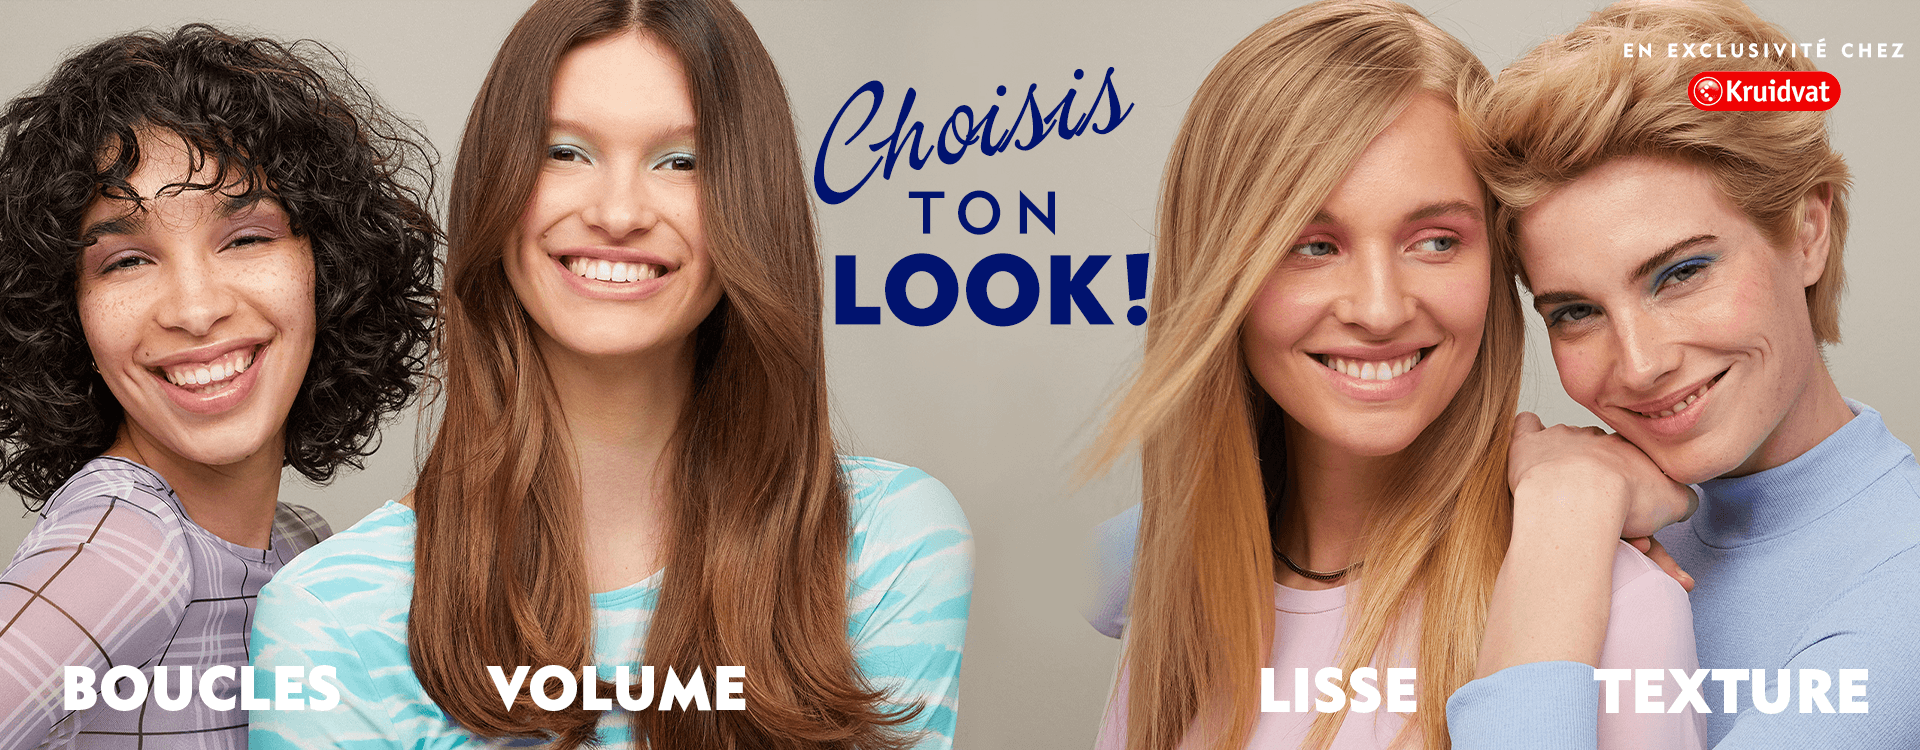 Choisis ton look ! Femmes avec types de cheveux differents